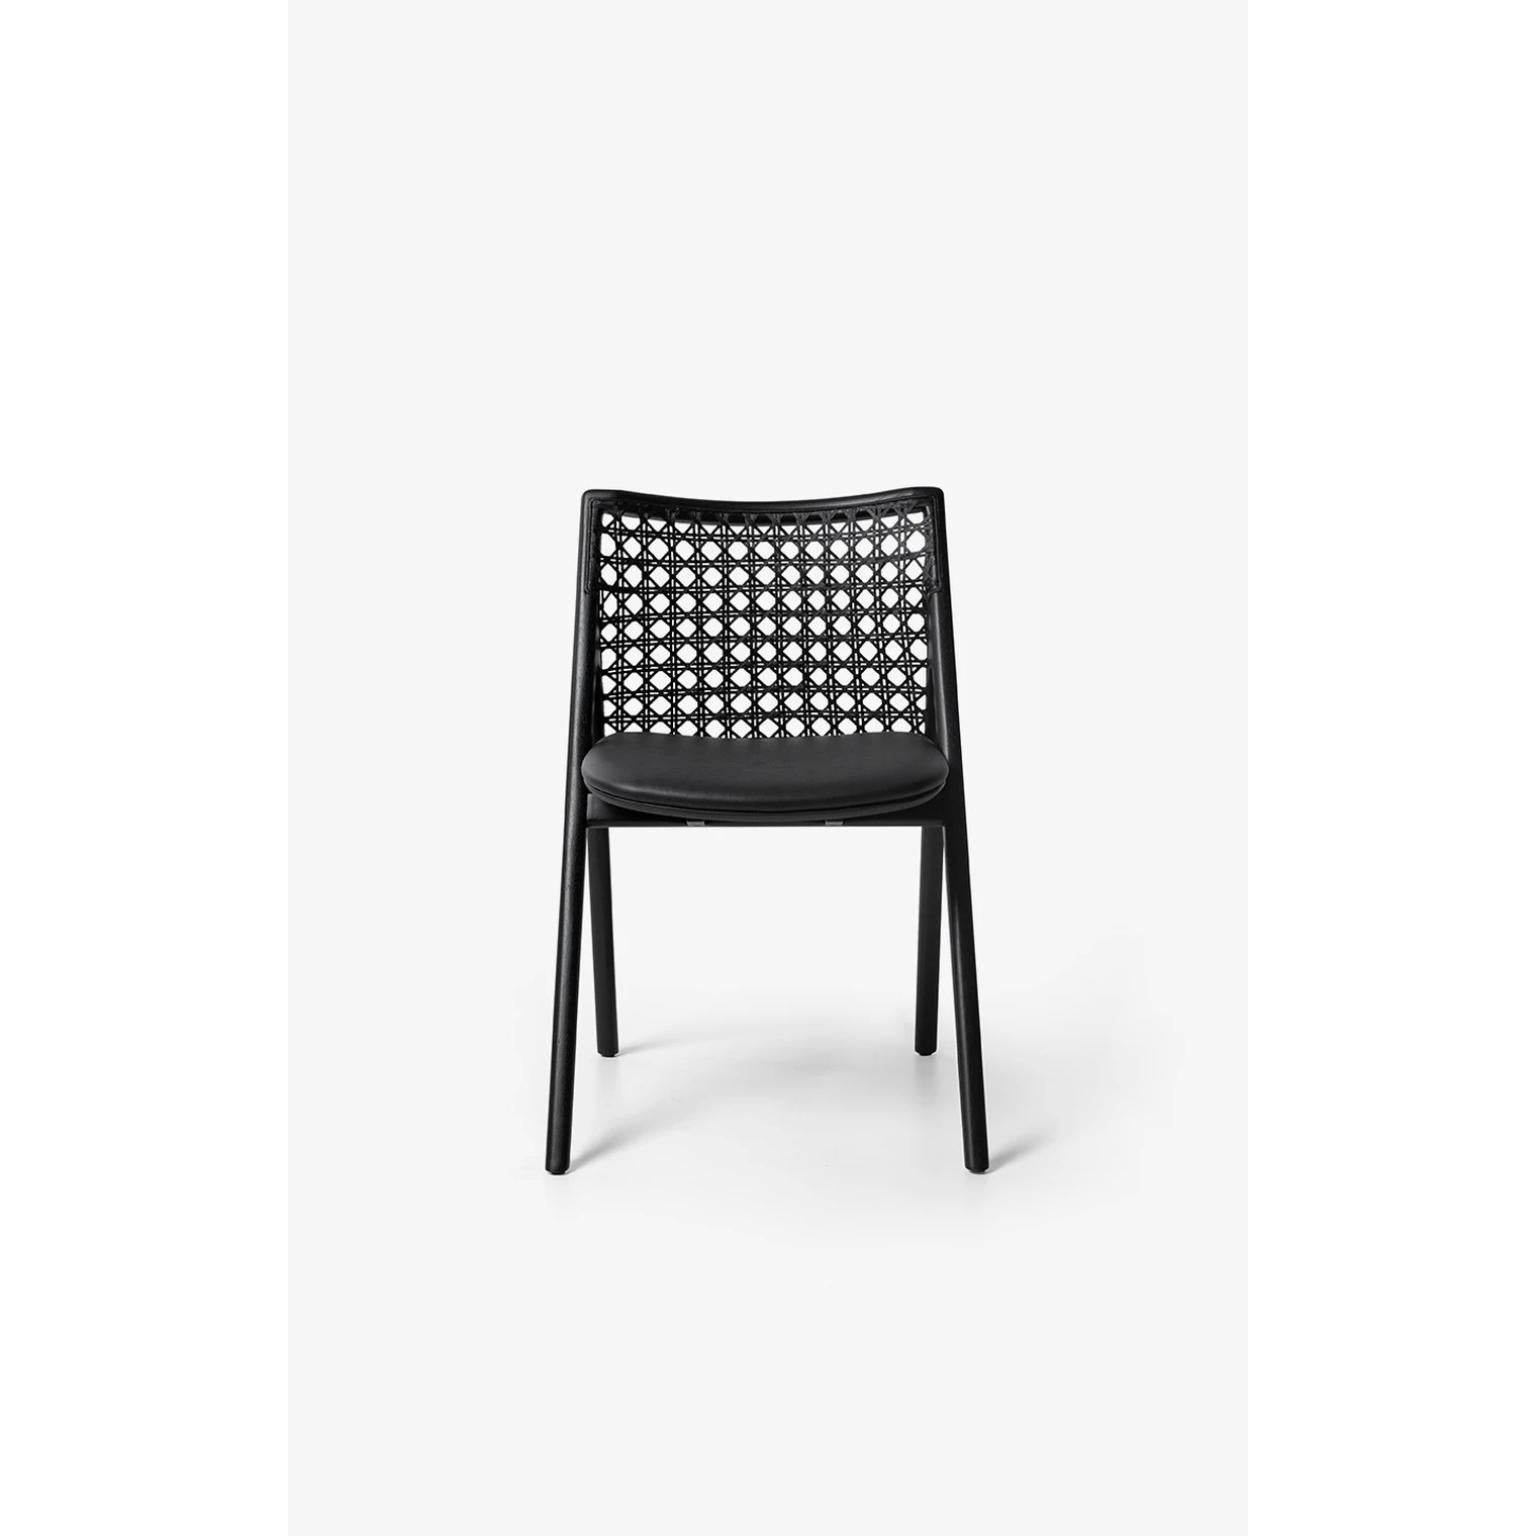 Schwarzer Tela-Stuhl von Wentz
Abmessungen: T 54 x B 55 x H 80 cm
MATERIALIEN: Tauari-Holz, Baumwolle, Geflecht, Sperrholz, Polstermöbel.
Gewicht: 5,4kg / 11,9 lbs

Der Sessel Tela ist eine Begegnung zwischen zeitgenössischem Design und